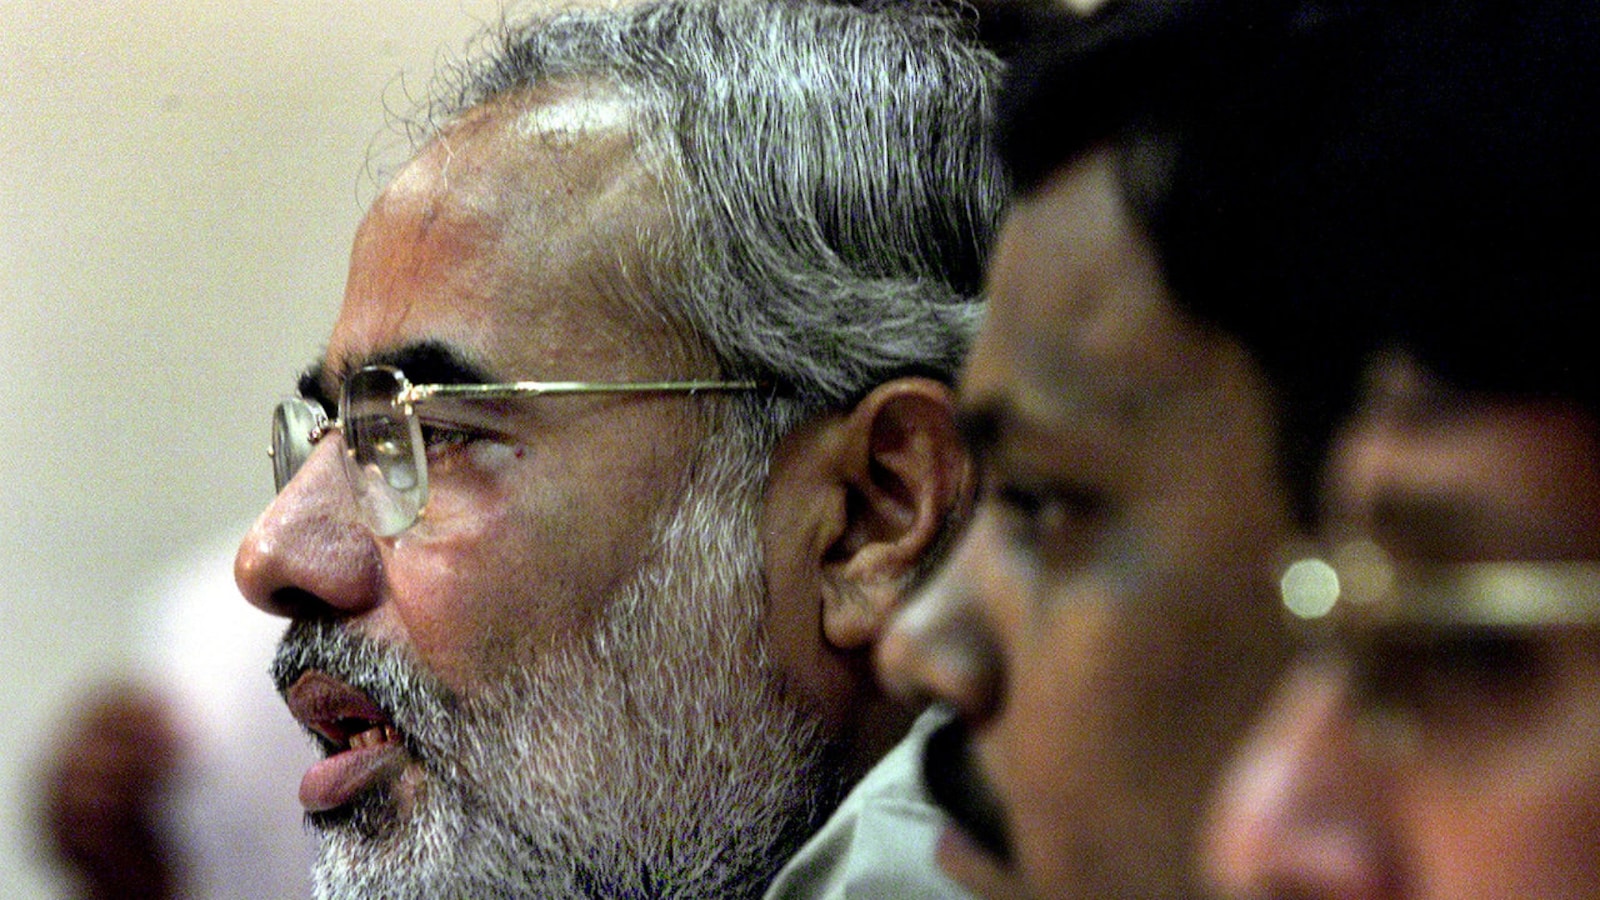 BBC made 'glaring factual errors' in documentary on PM Modi, say ex-judges,  bureaucrats